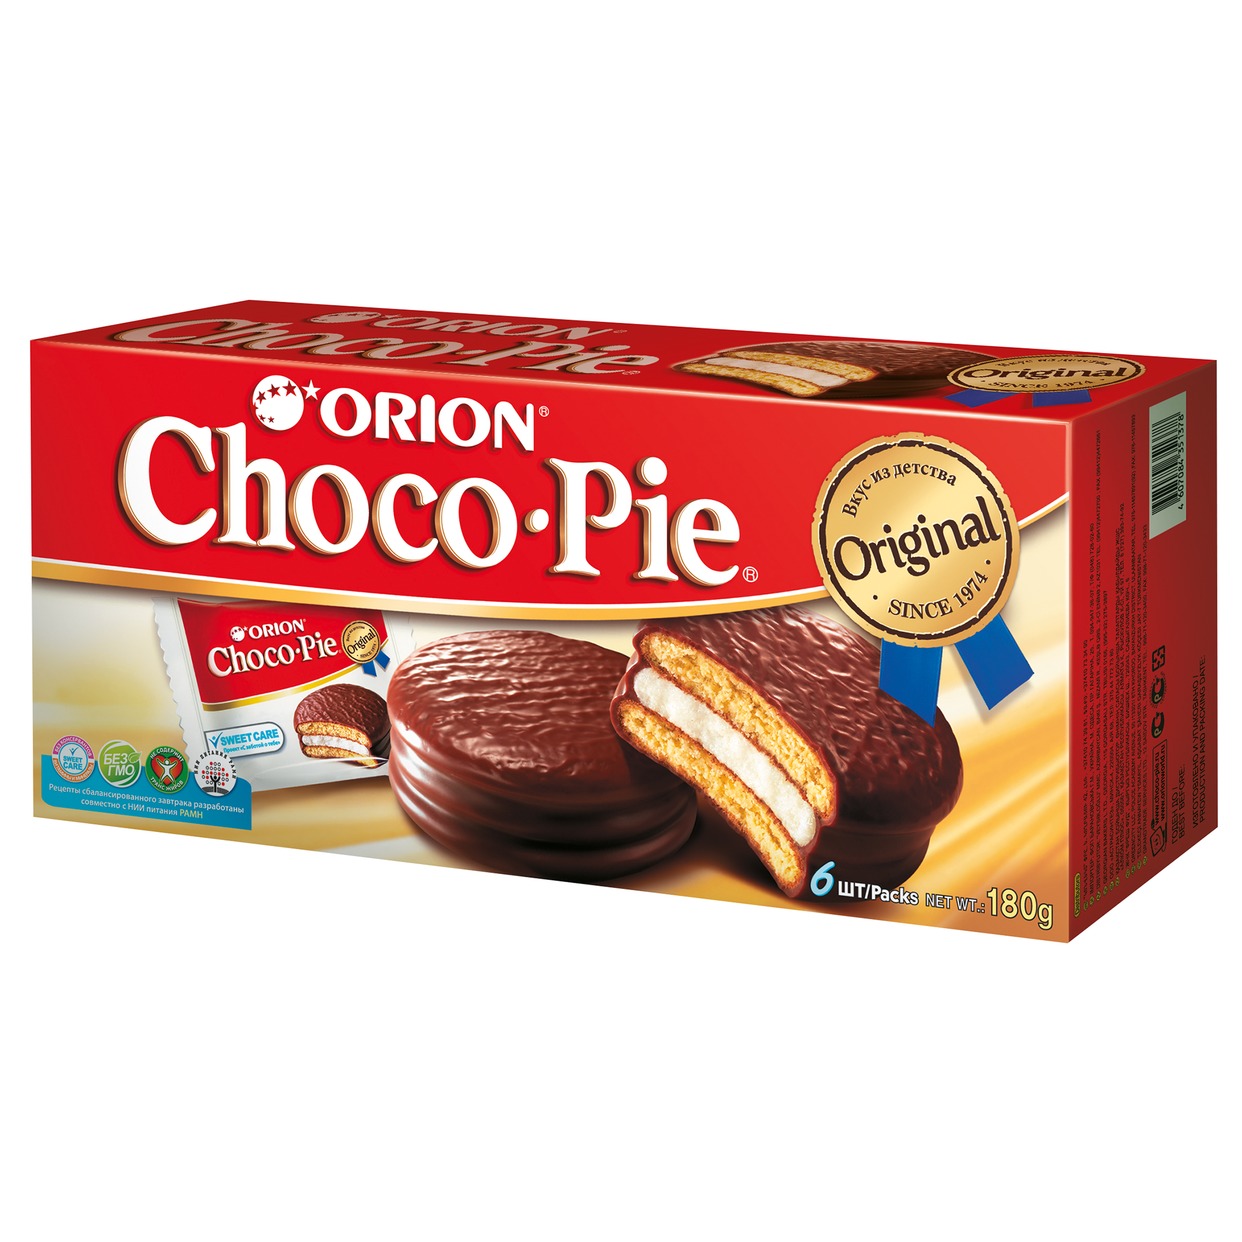 Пирожное Orion Choco pie 6 шт.*30 г по акции в Пятерочке